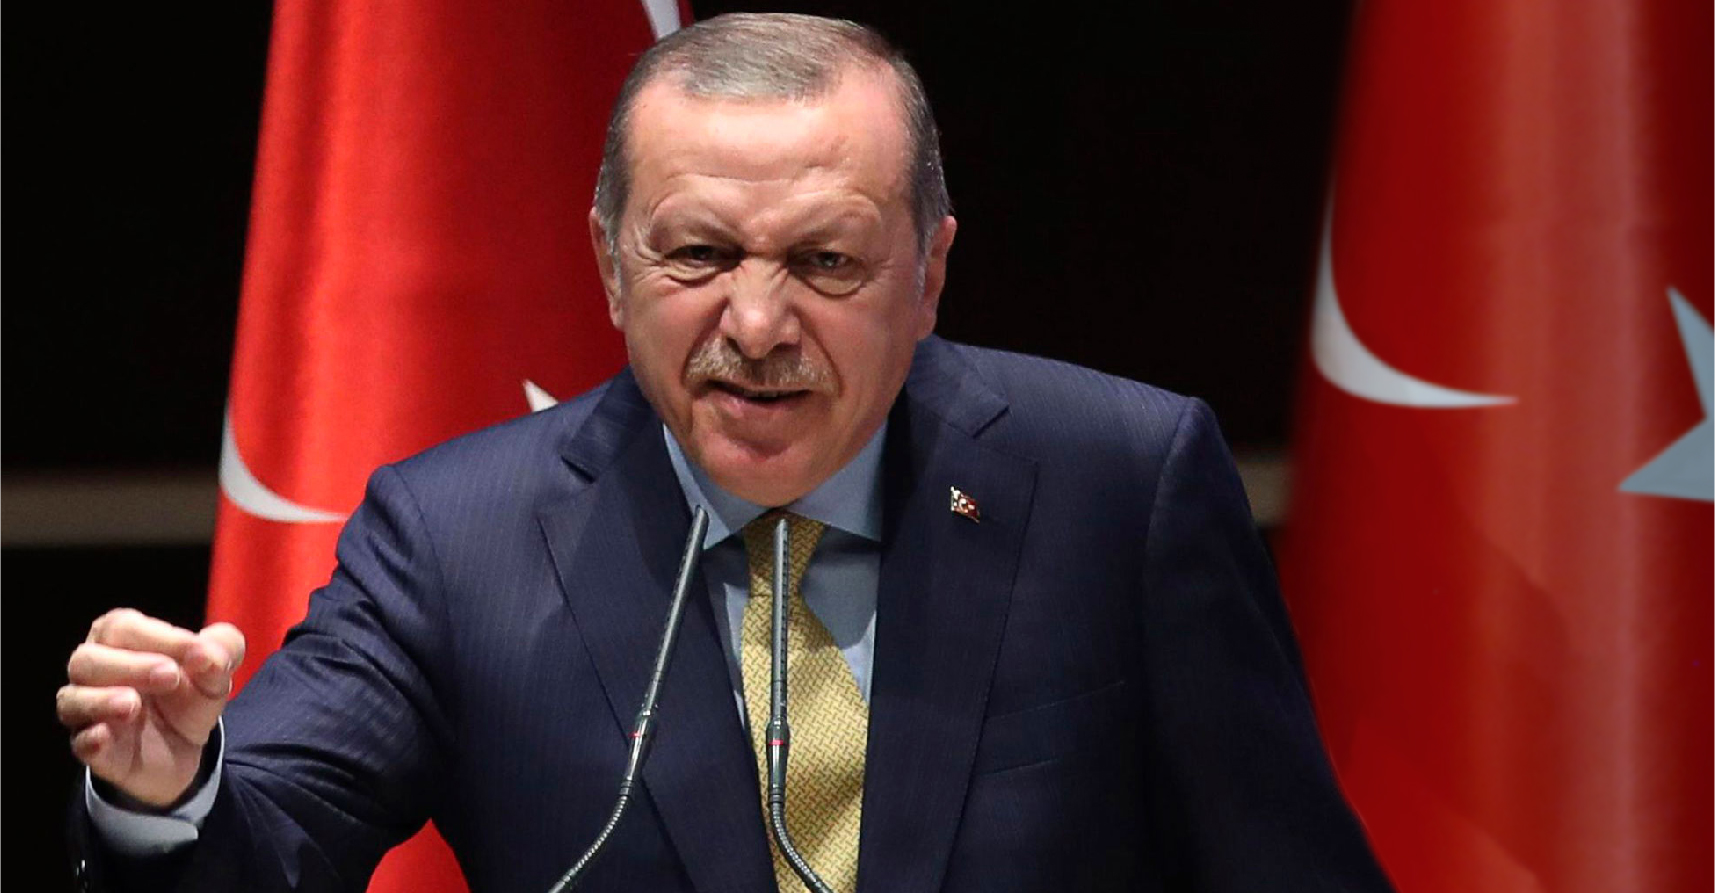 صورة إردوغان يهدّد بحذف اسم الشارع الذي تقع فيه السفارة الإسرائيليّة في أنقرة عن الوجود